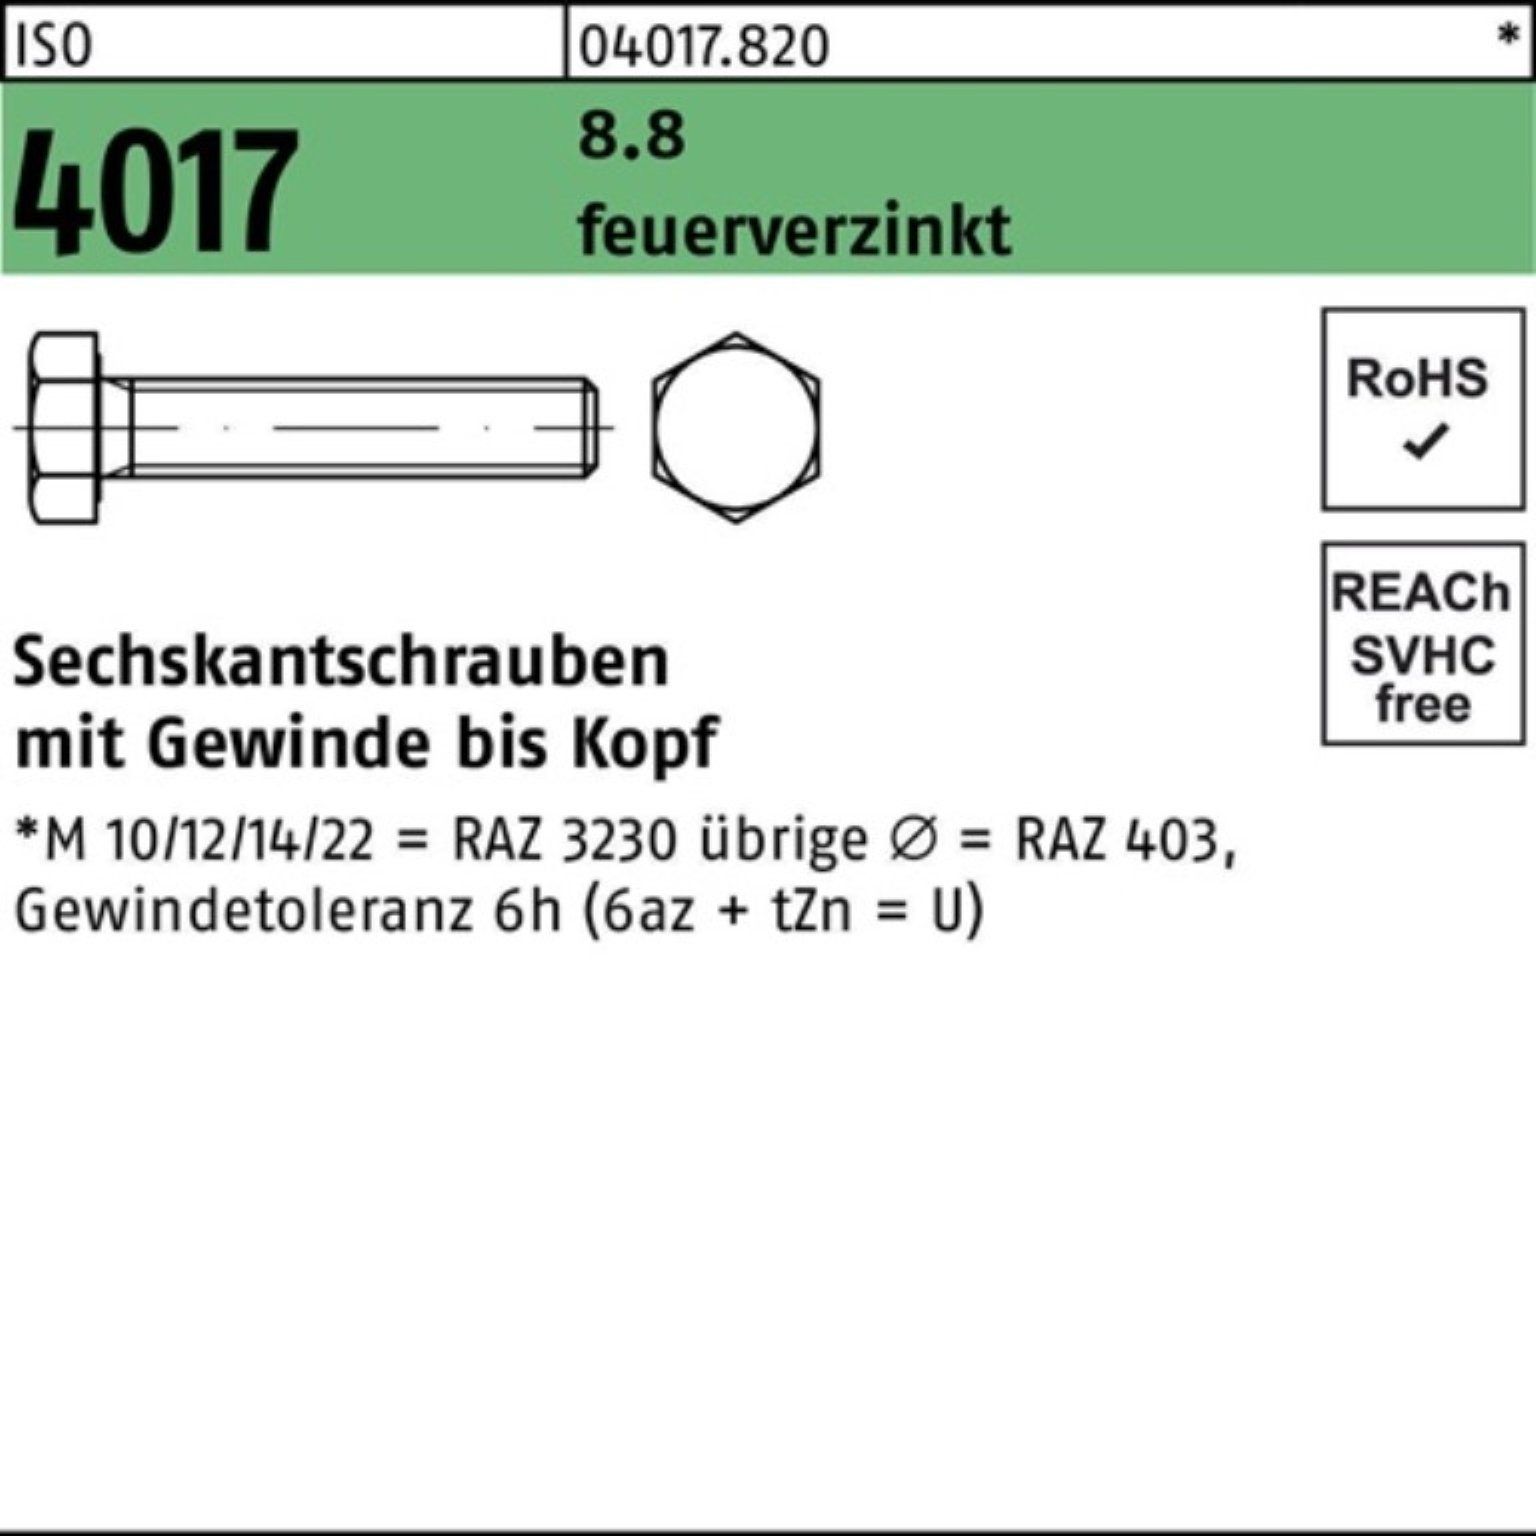 Bufab Sechskantschraube 100er Pack Sechskantschraube VG M10x 100 100 S 4017 ISO feuerverz. 8.8